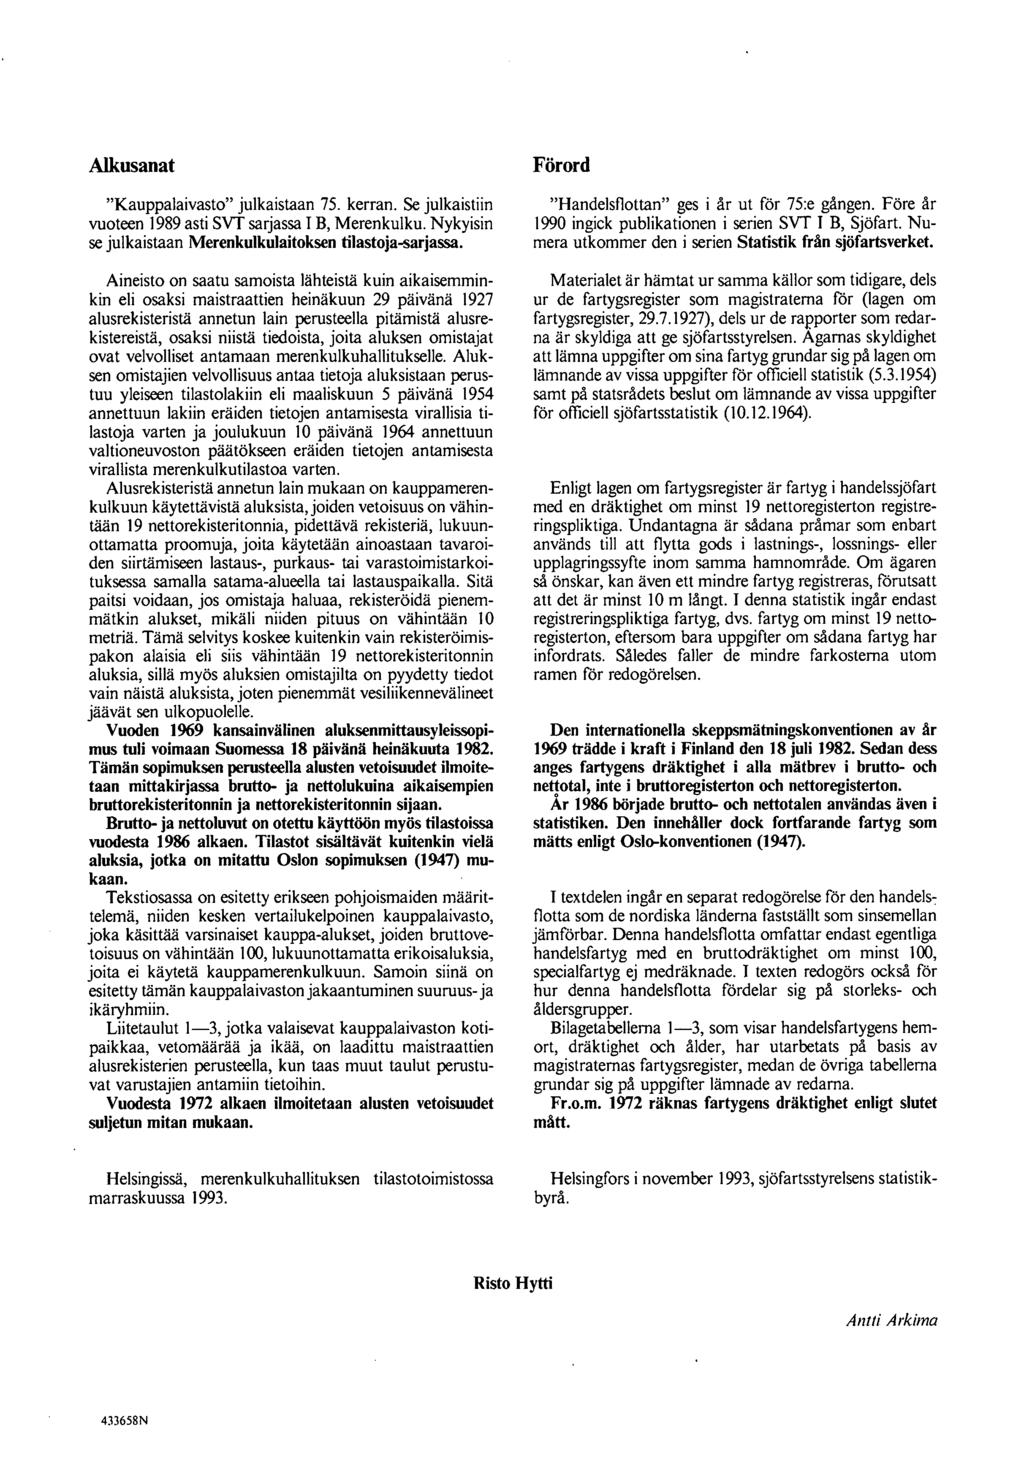 Alkusanat Kauppalaivasto julkaistaan 75. kerran. Se julkaistiin vuoteen 1989 asti SVT sarjassa IB, Merenkulku. Nykyisin se julkaistaan Merenkulkulaitoksen tilastoja-sarjassa.